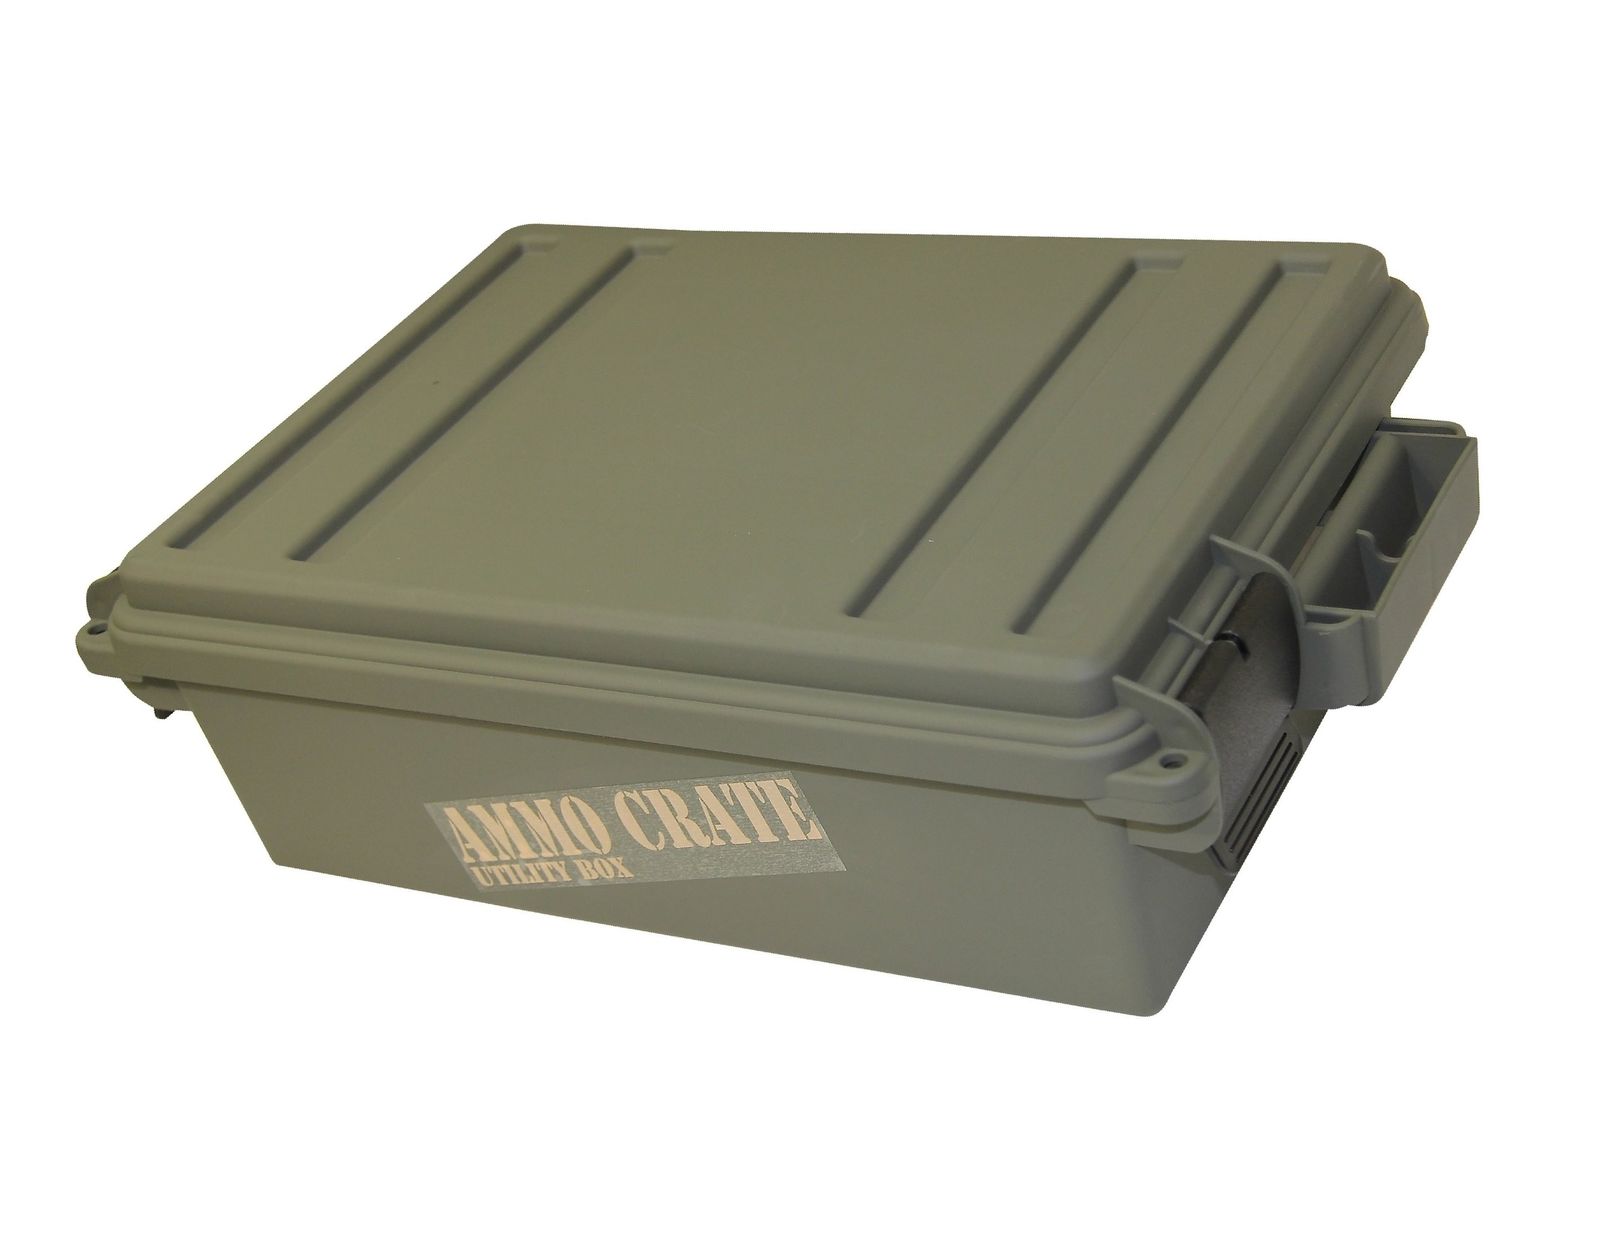 Ящик MTM Utility box для хранения патрон и аммуниции - фото 1